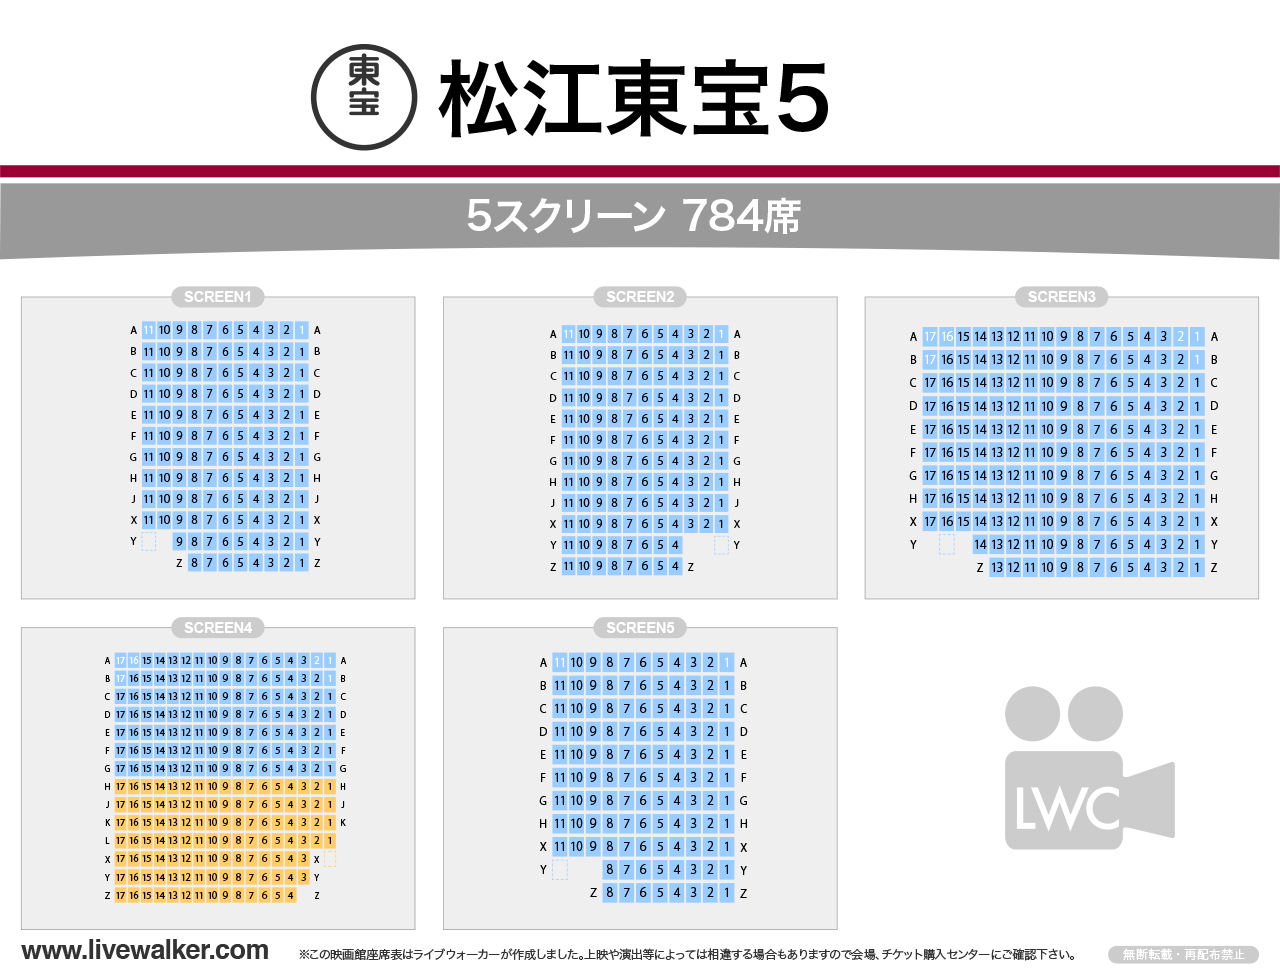 松江東宝5スクリーンの座席表